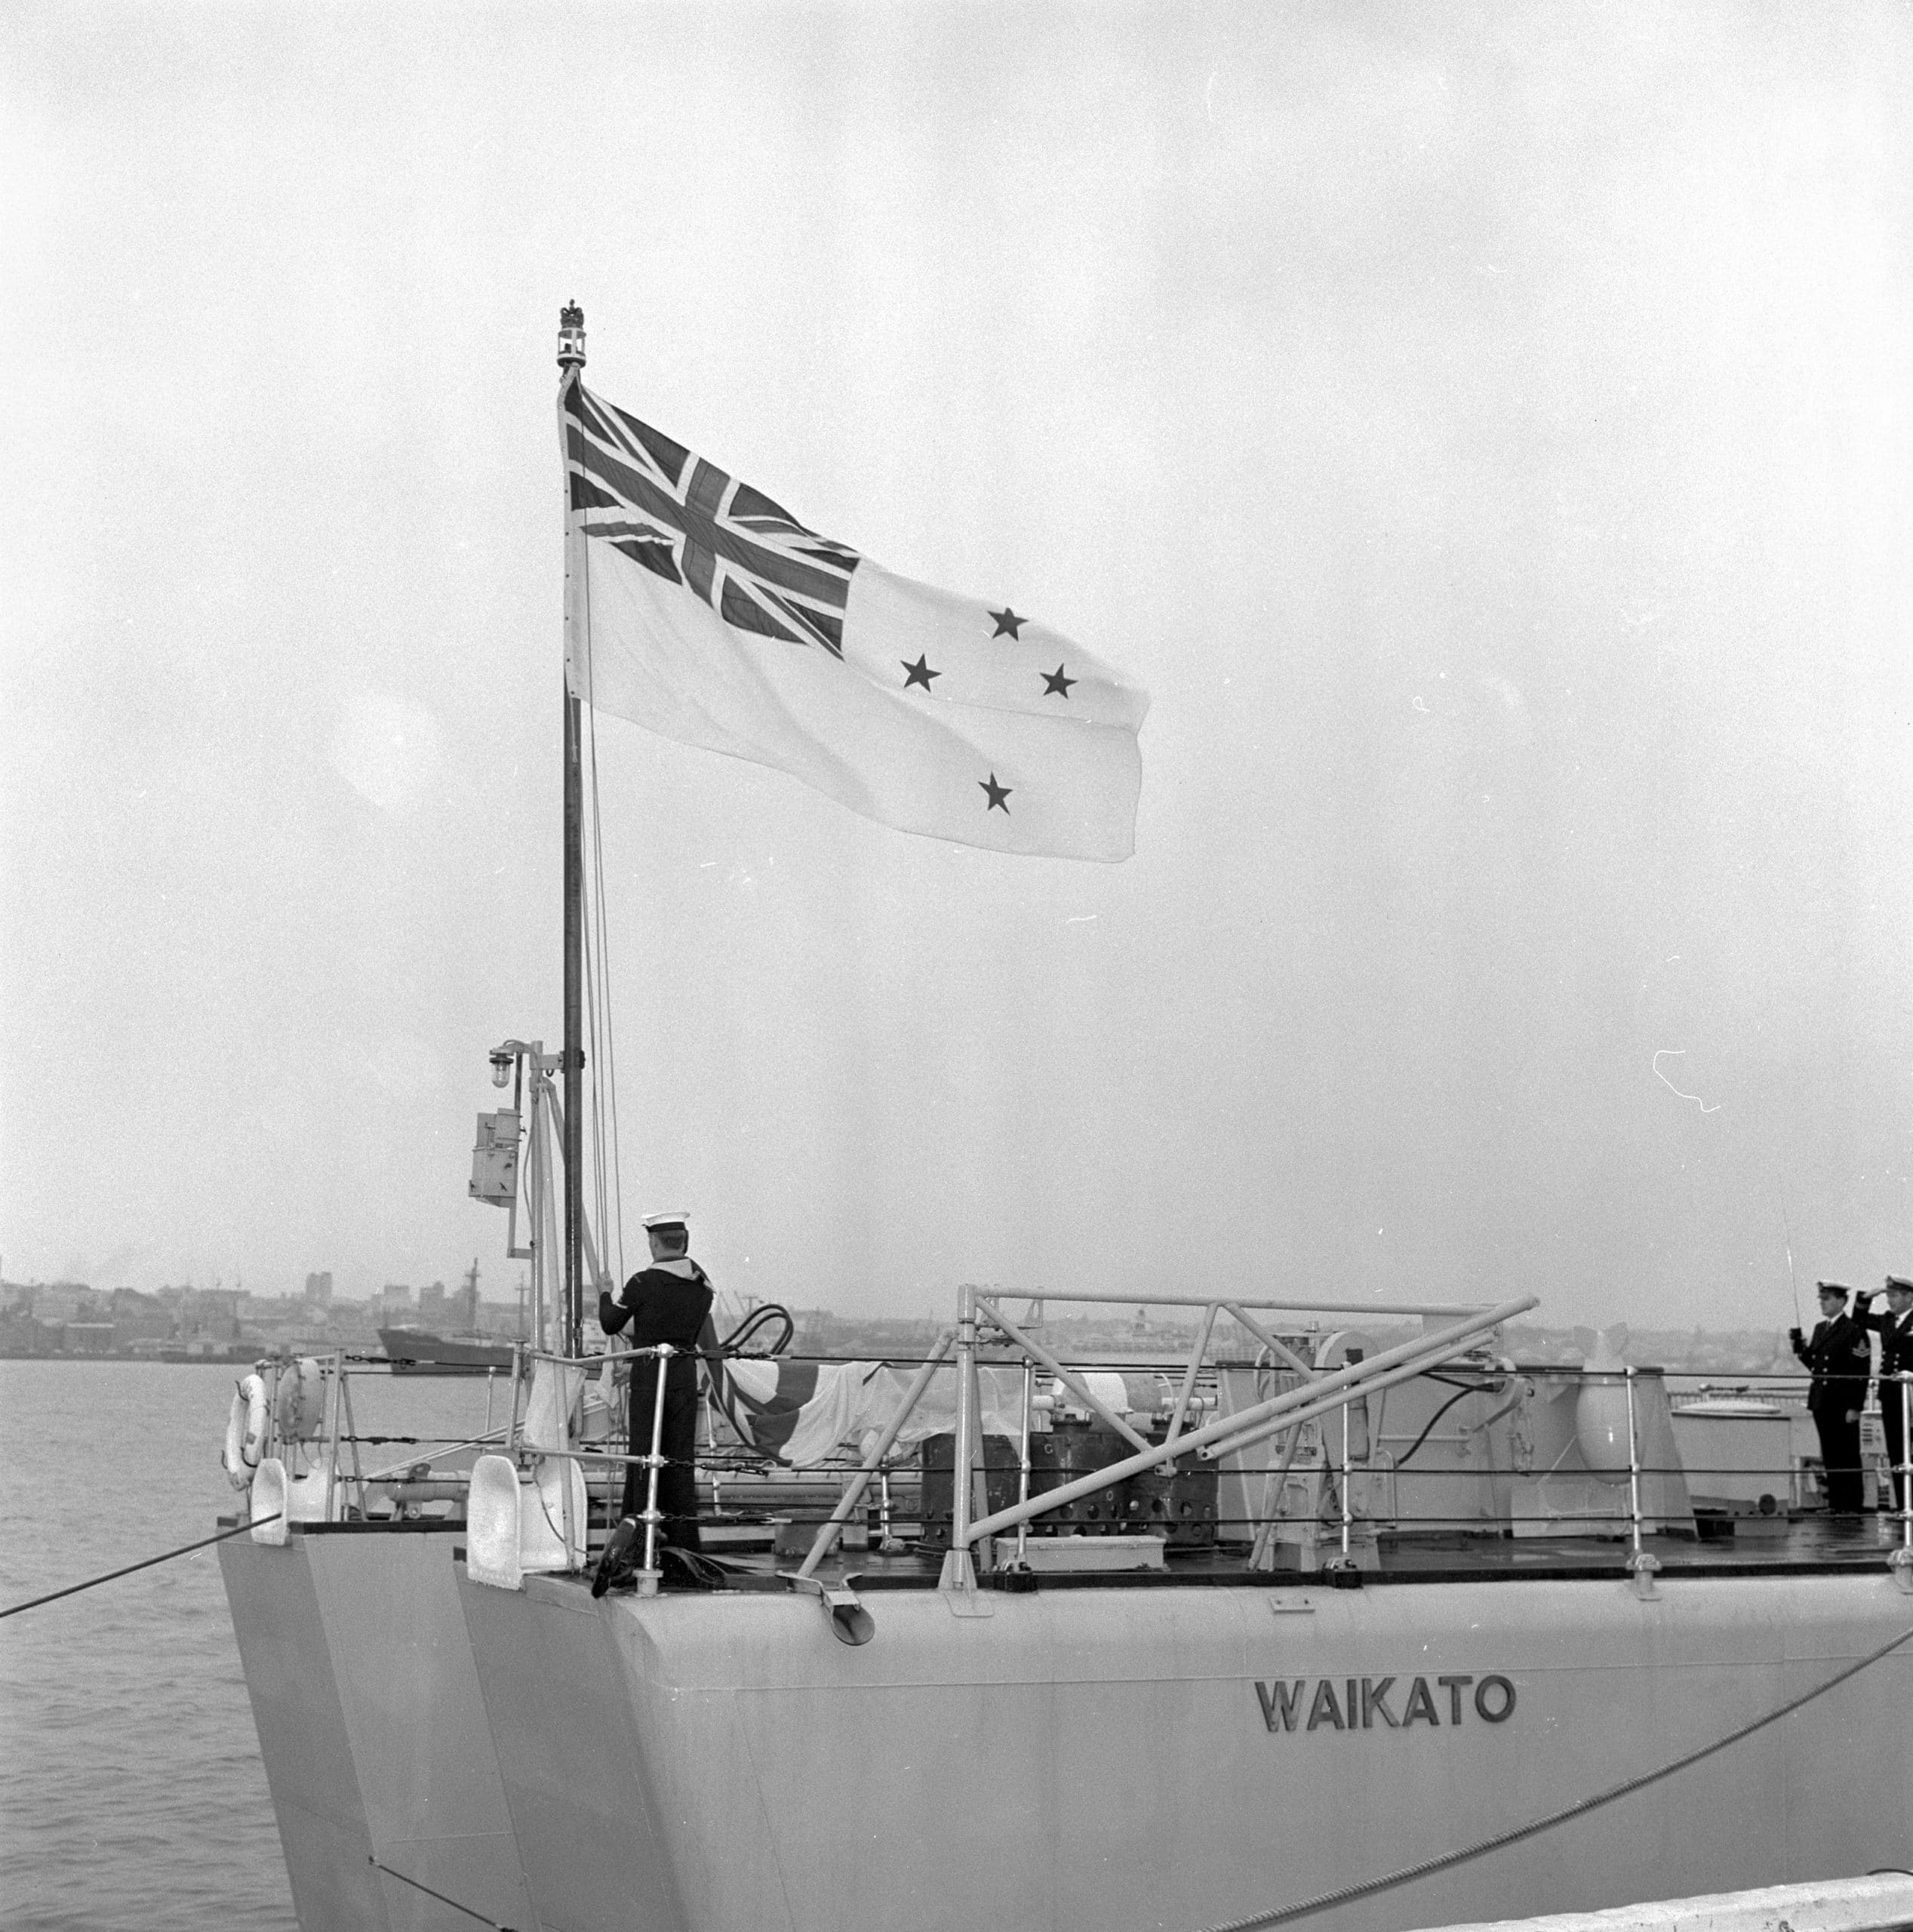 HMNZS Waikato raising the White Ensign